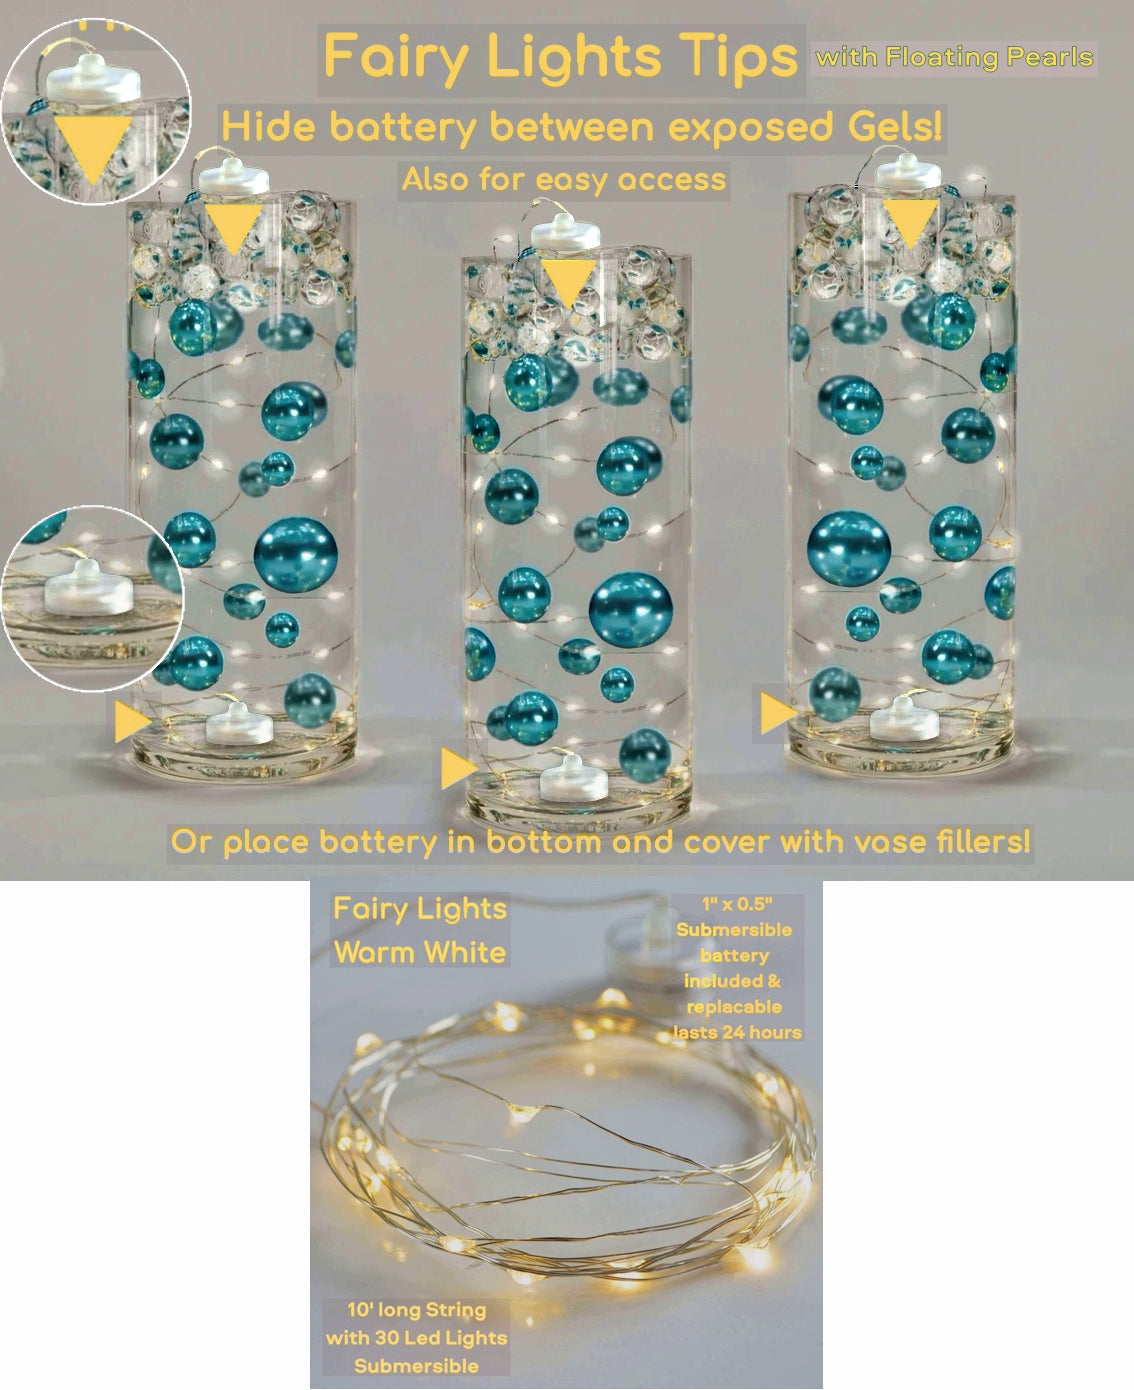 Feuilles d'automne, pierres précieuses et perles réalistes "flottantes" - Décorations de vase - Dispersion de table